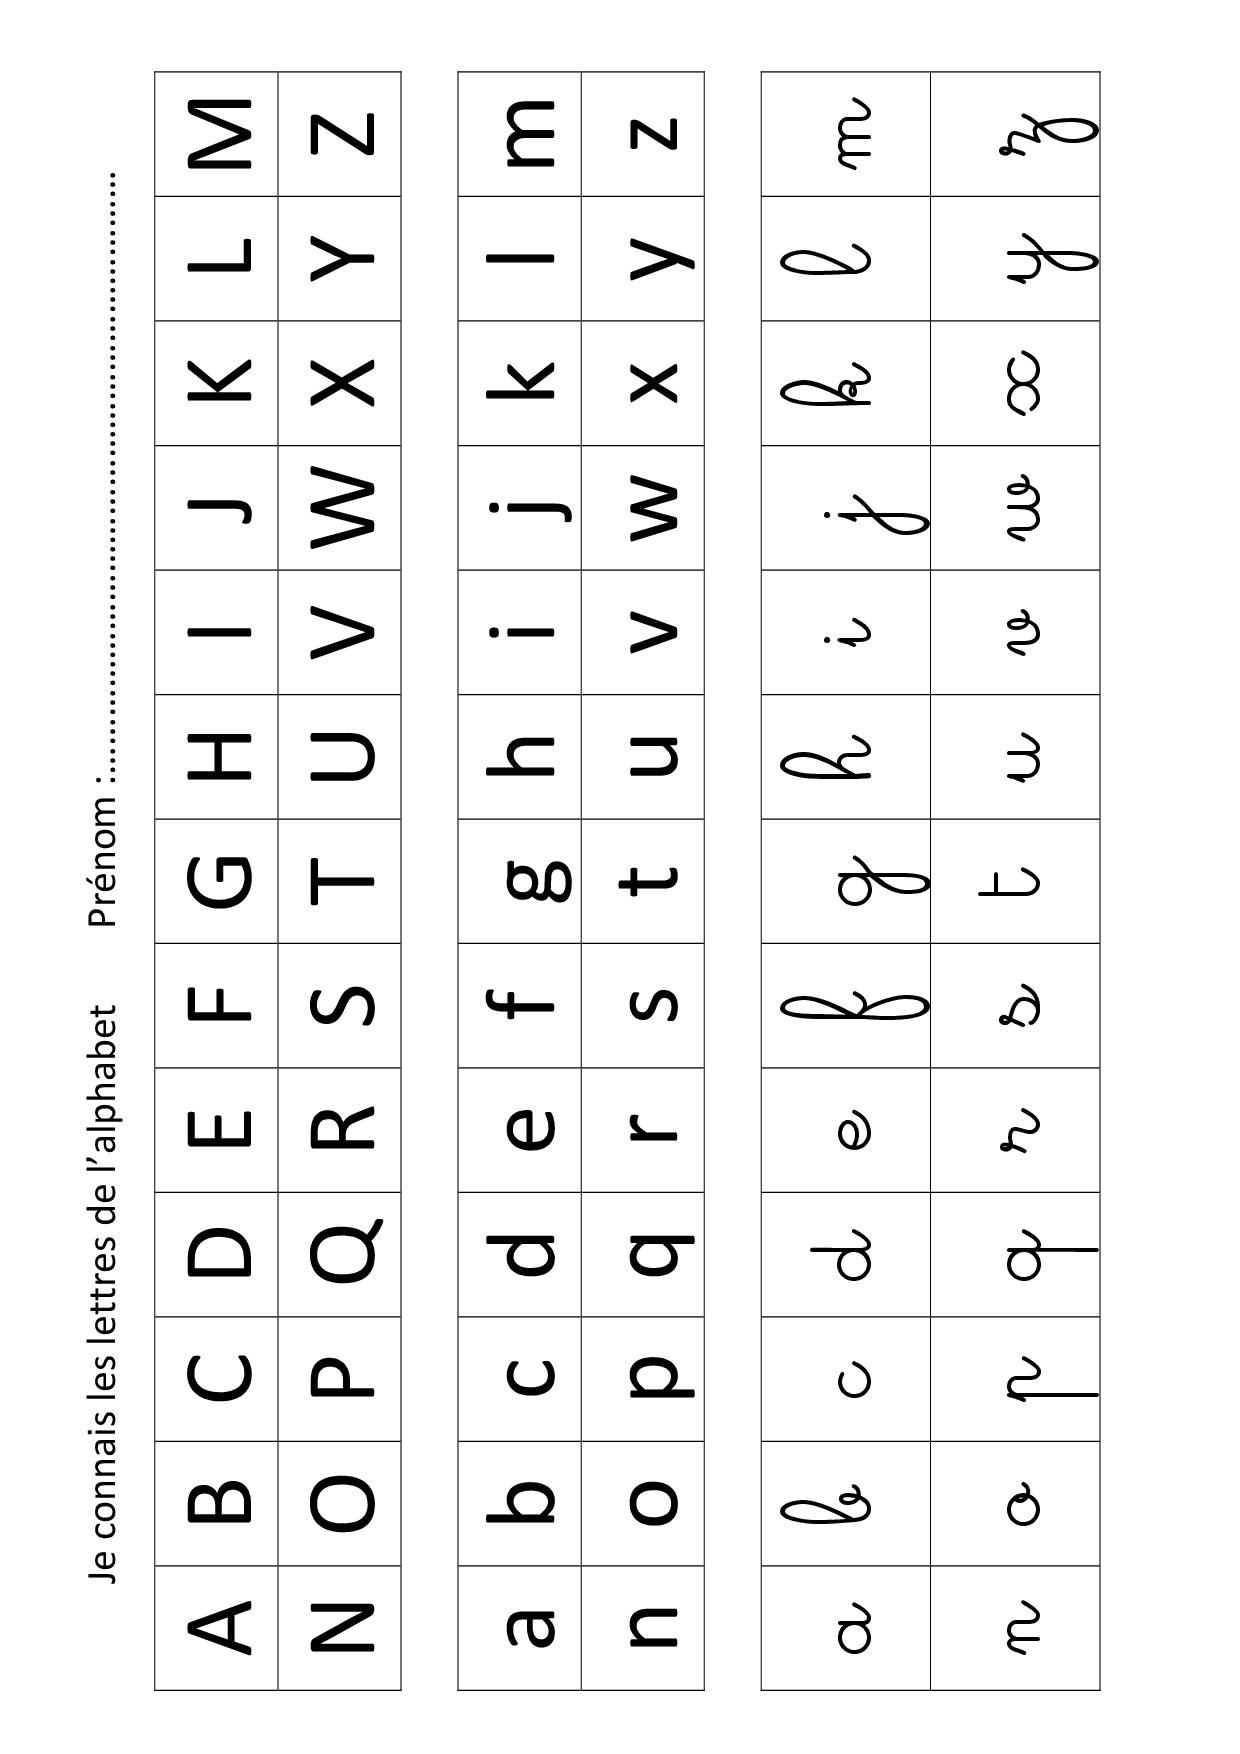 Apprendre À Écrire Les Lettres De L Alphabet serapportantà Apprendre A Ecrire Les Lettres En Minuscule 